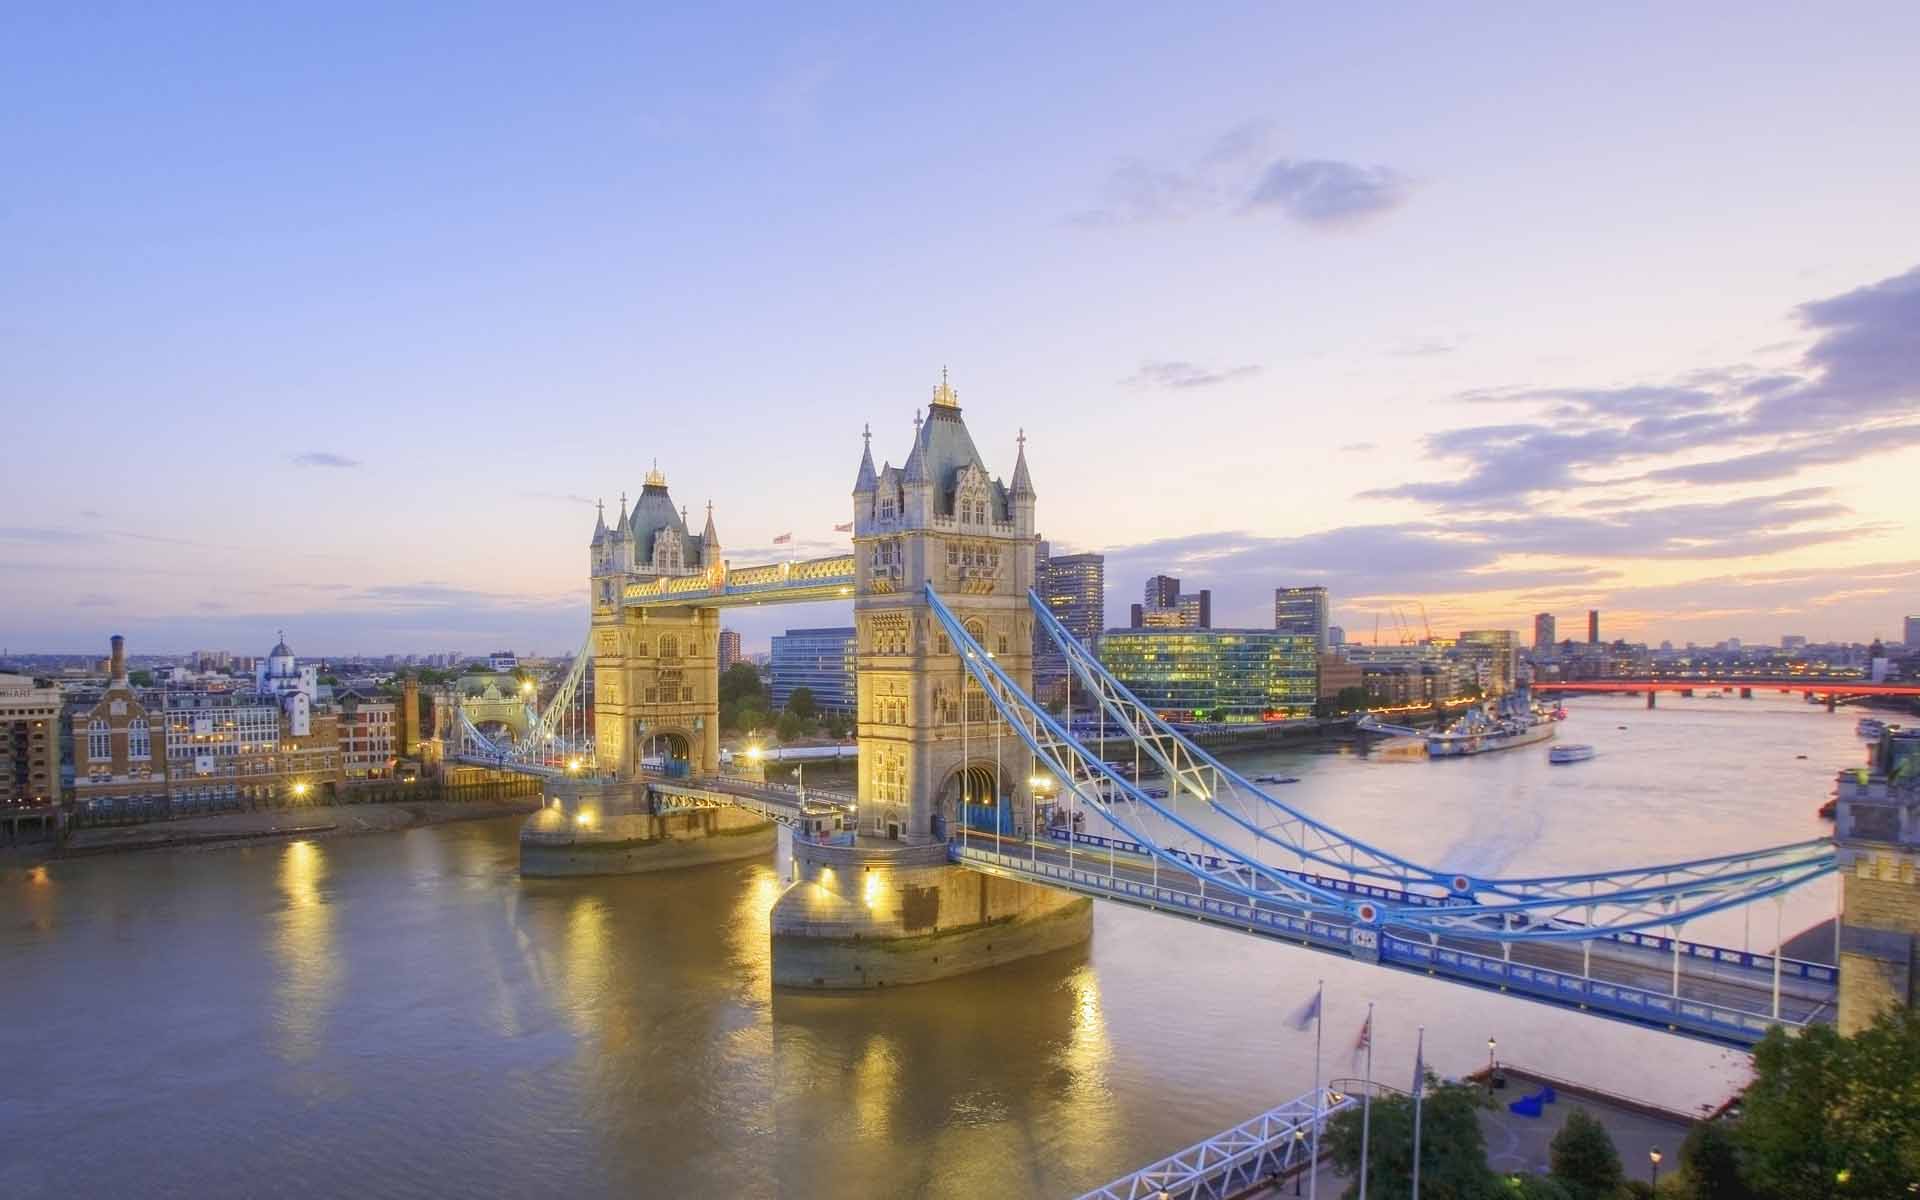 Fond d'ecran Tower Bridge de Londres